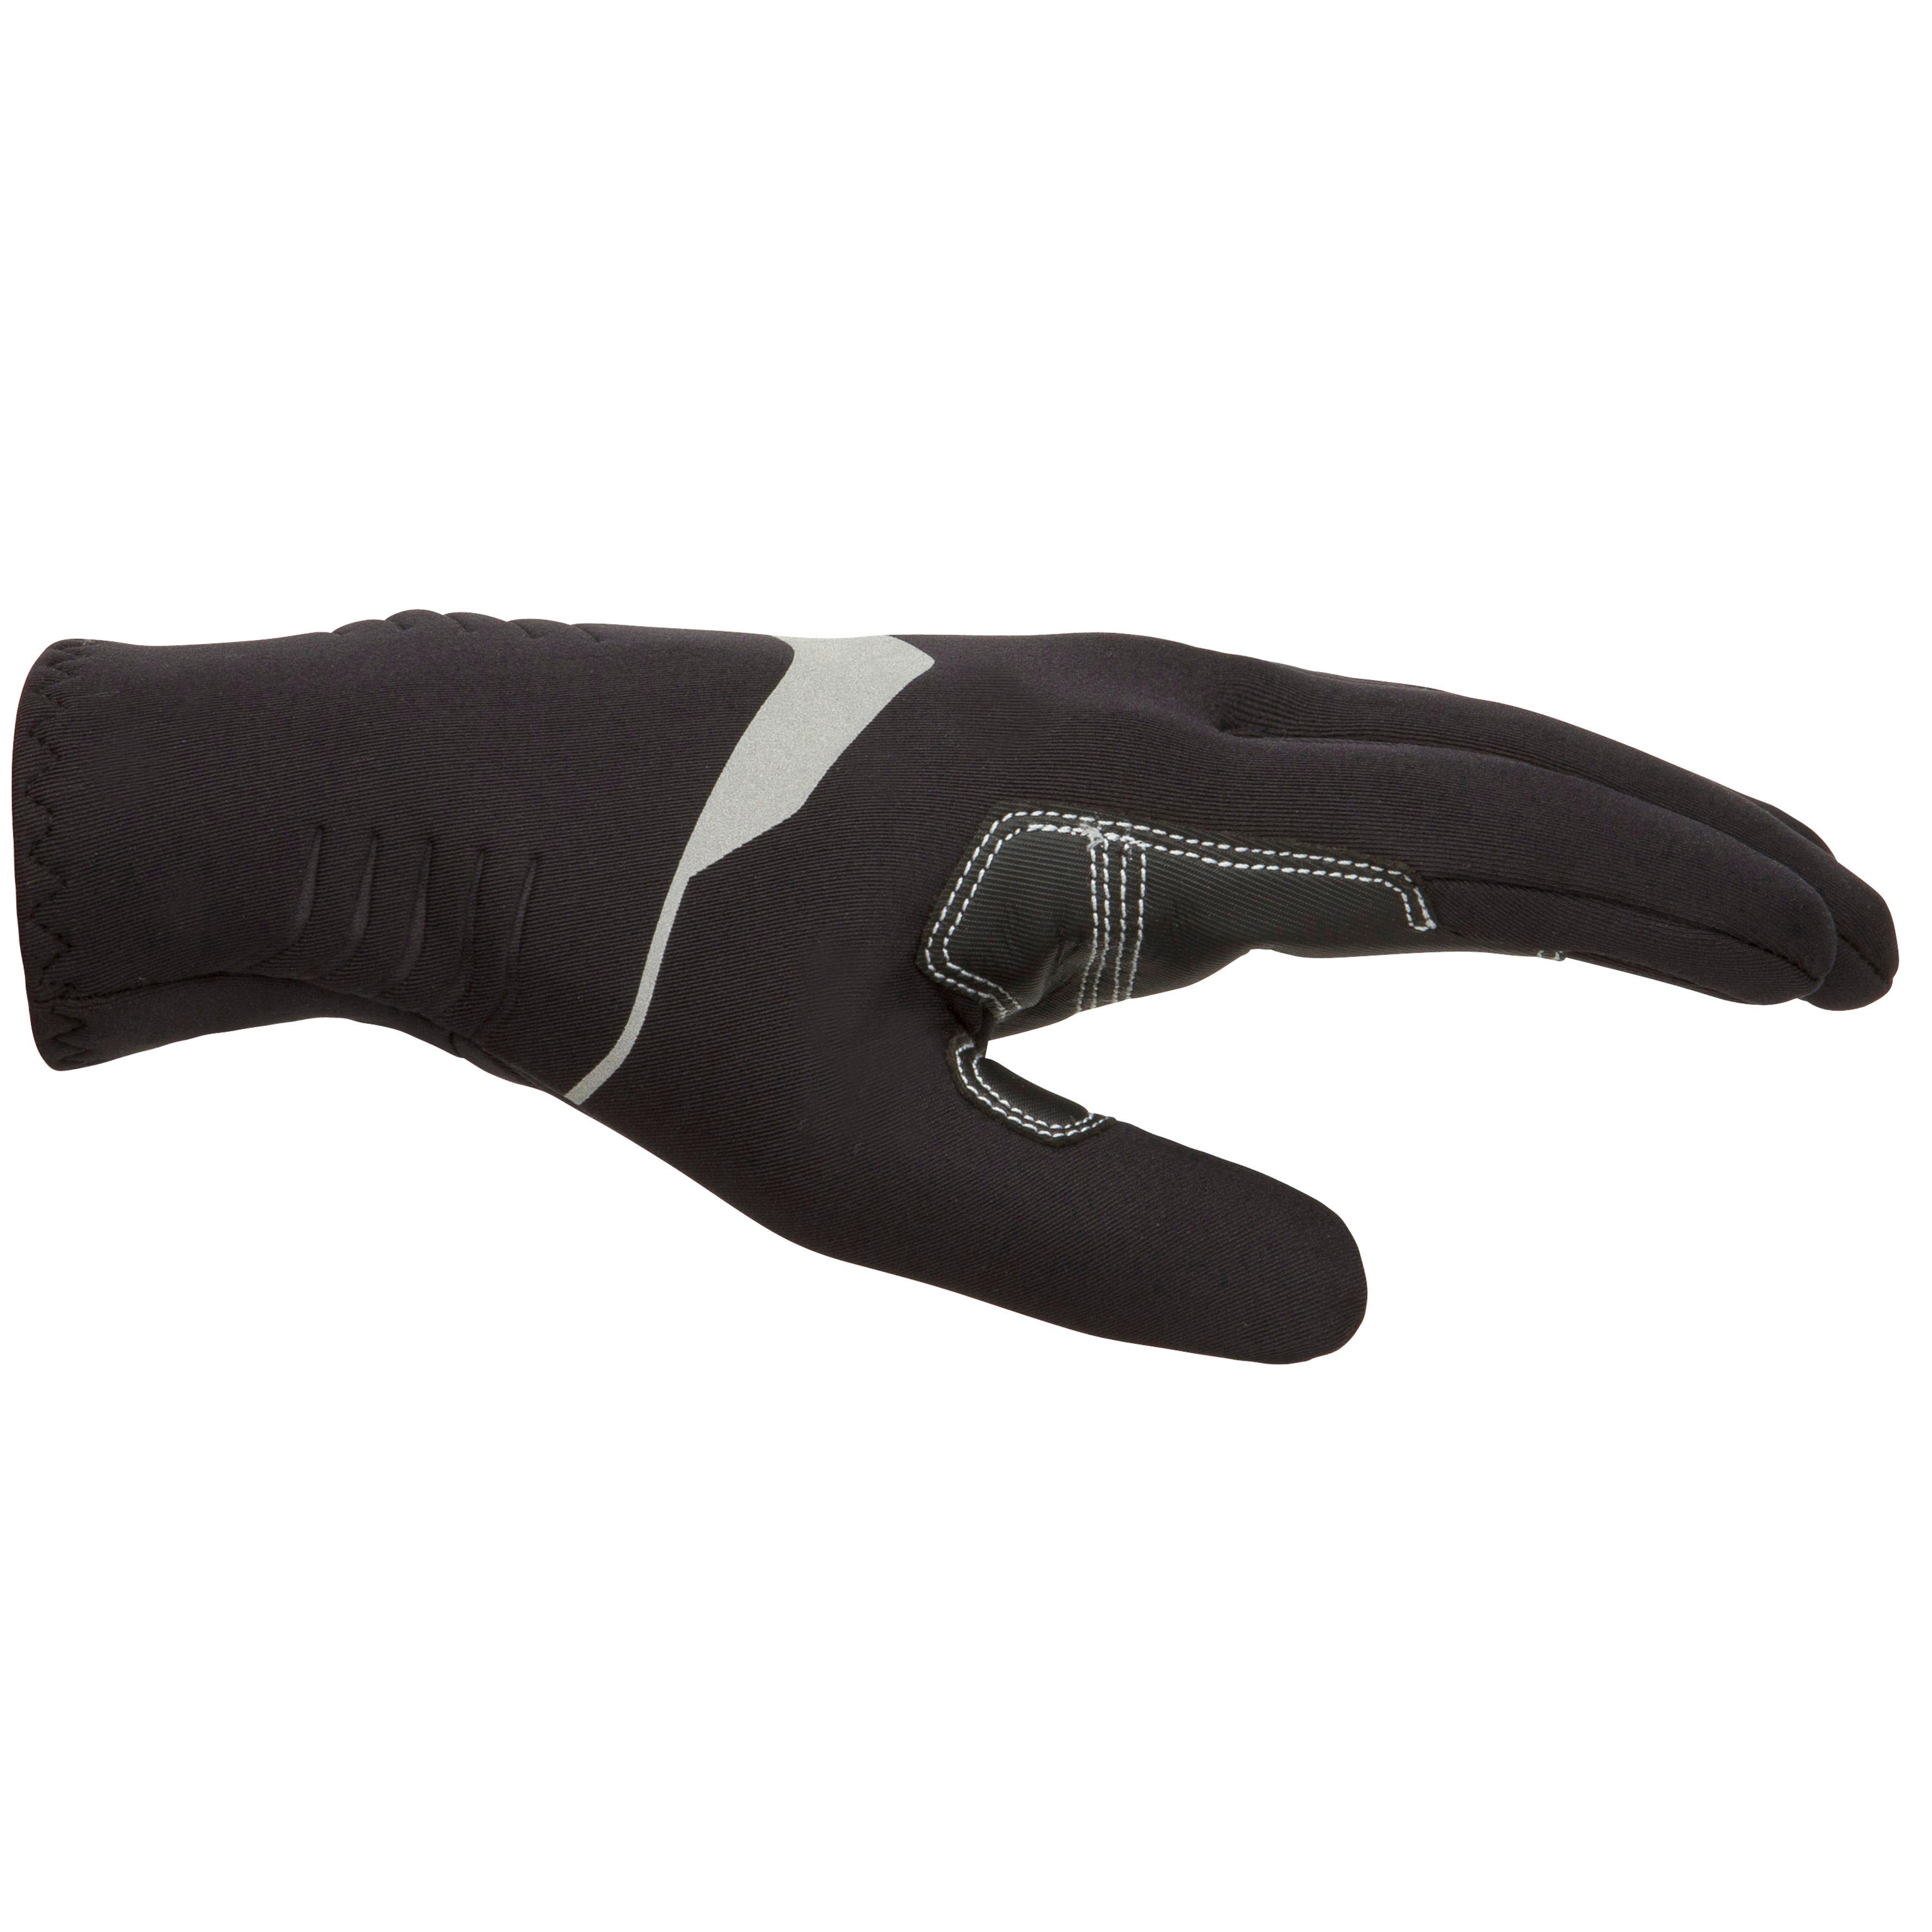 Neoprene Sailing Gloves - 900 Black